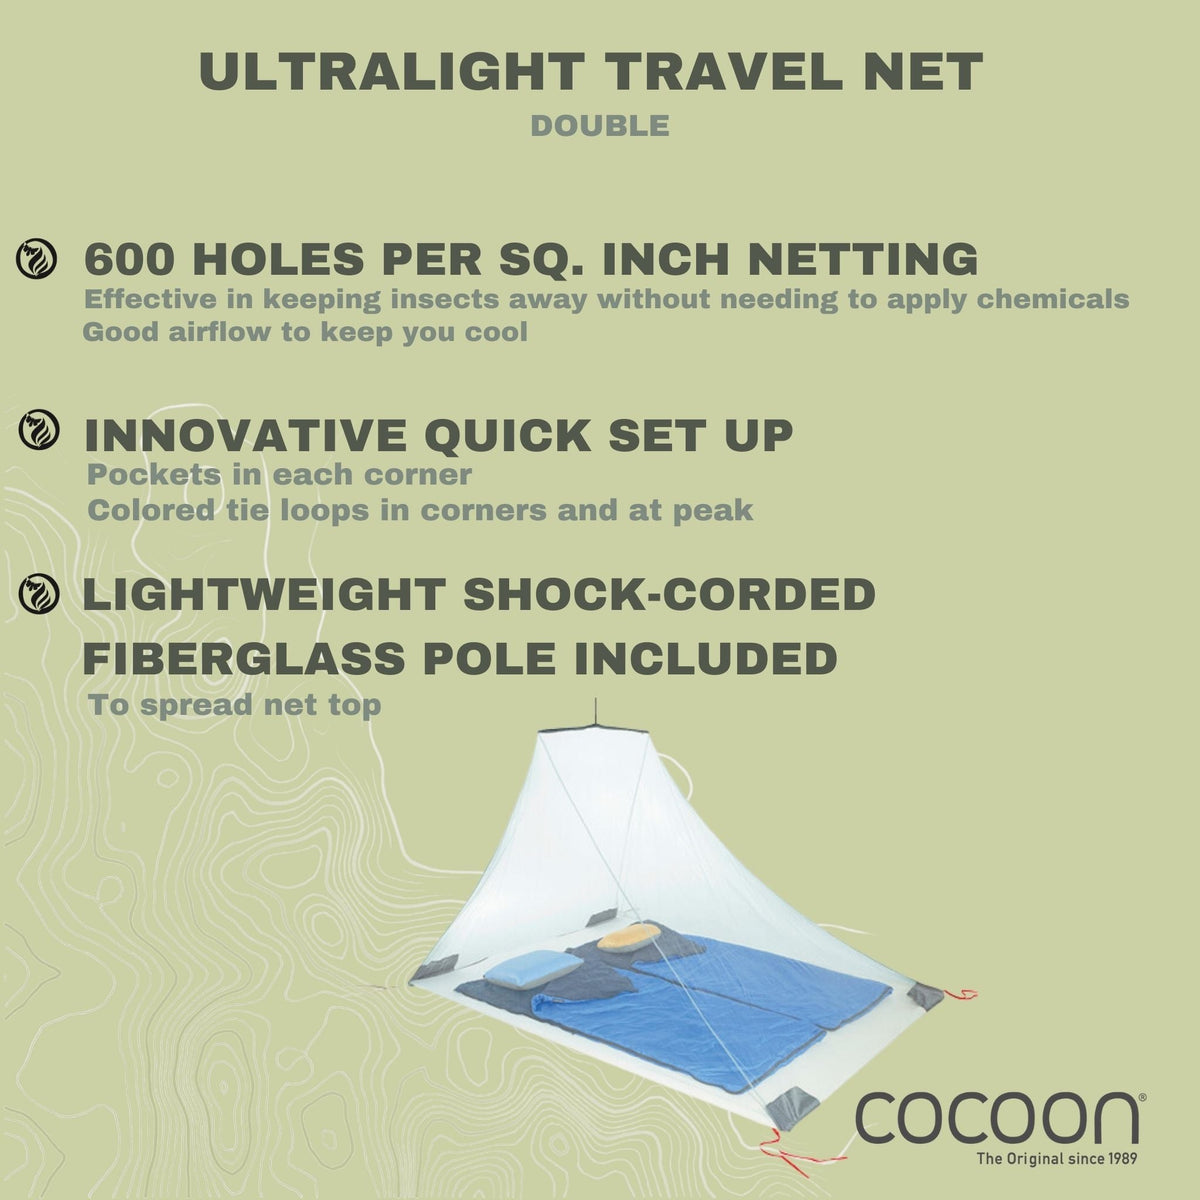 Travel Net Ultralight Double – COCOON